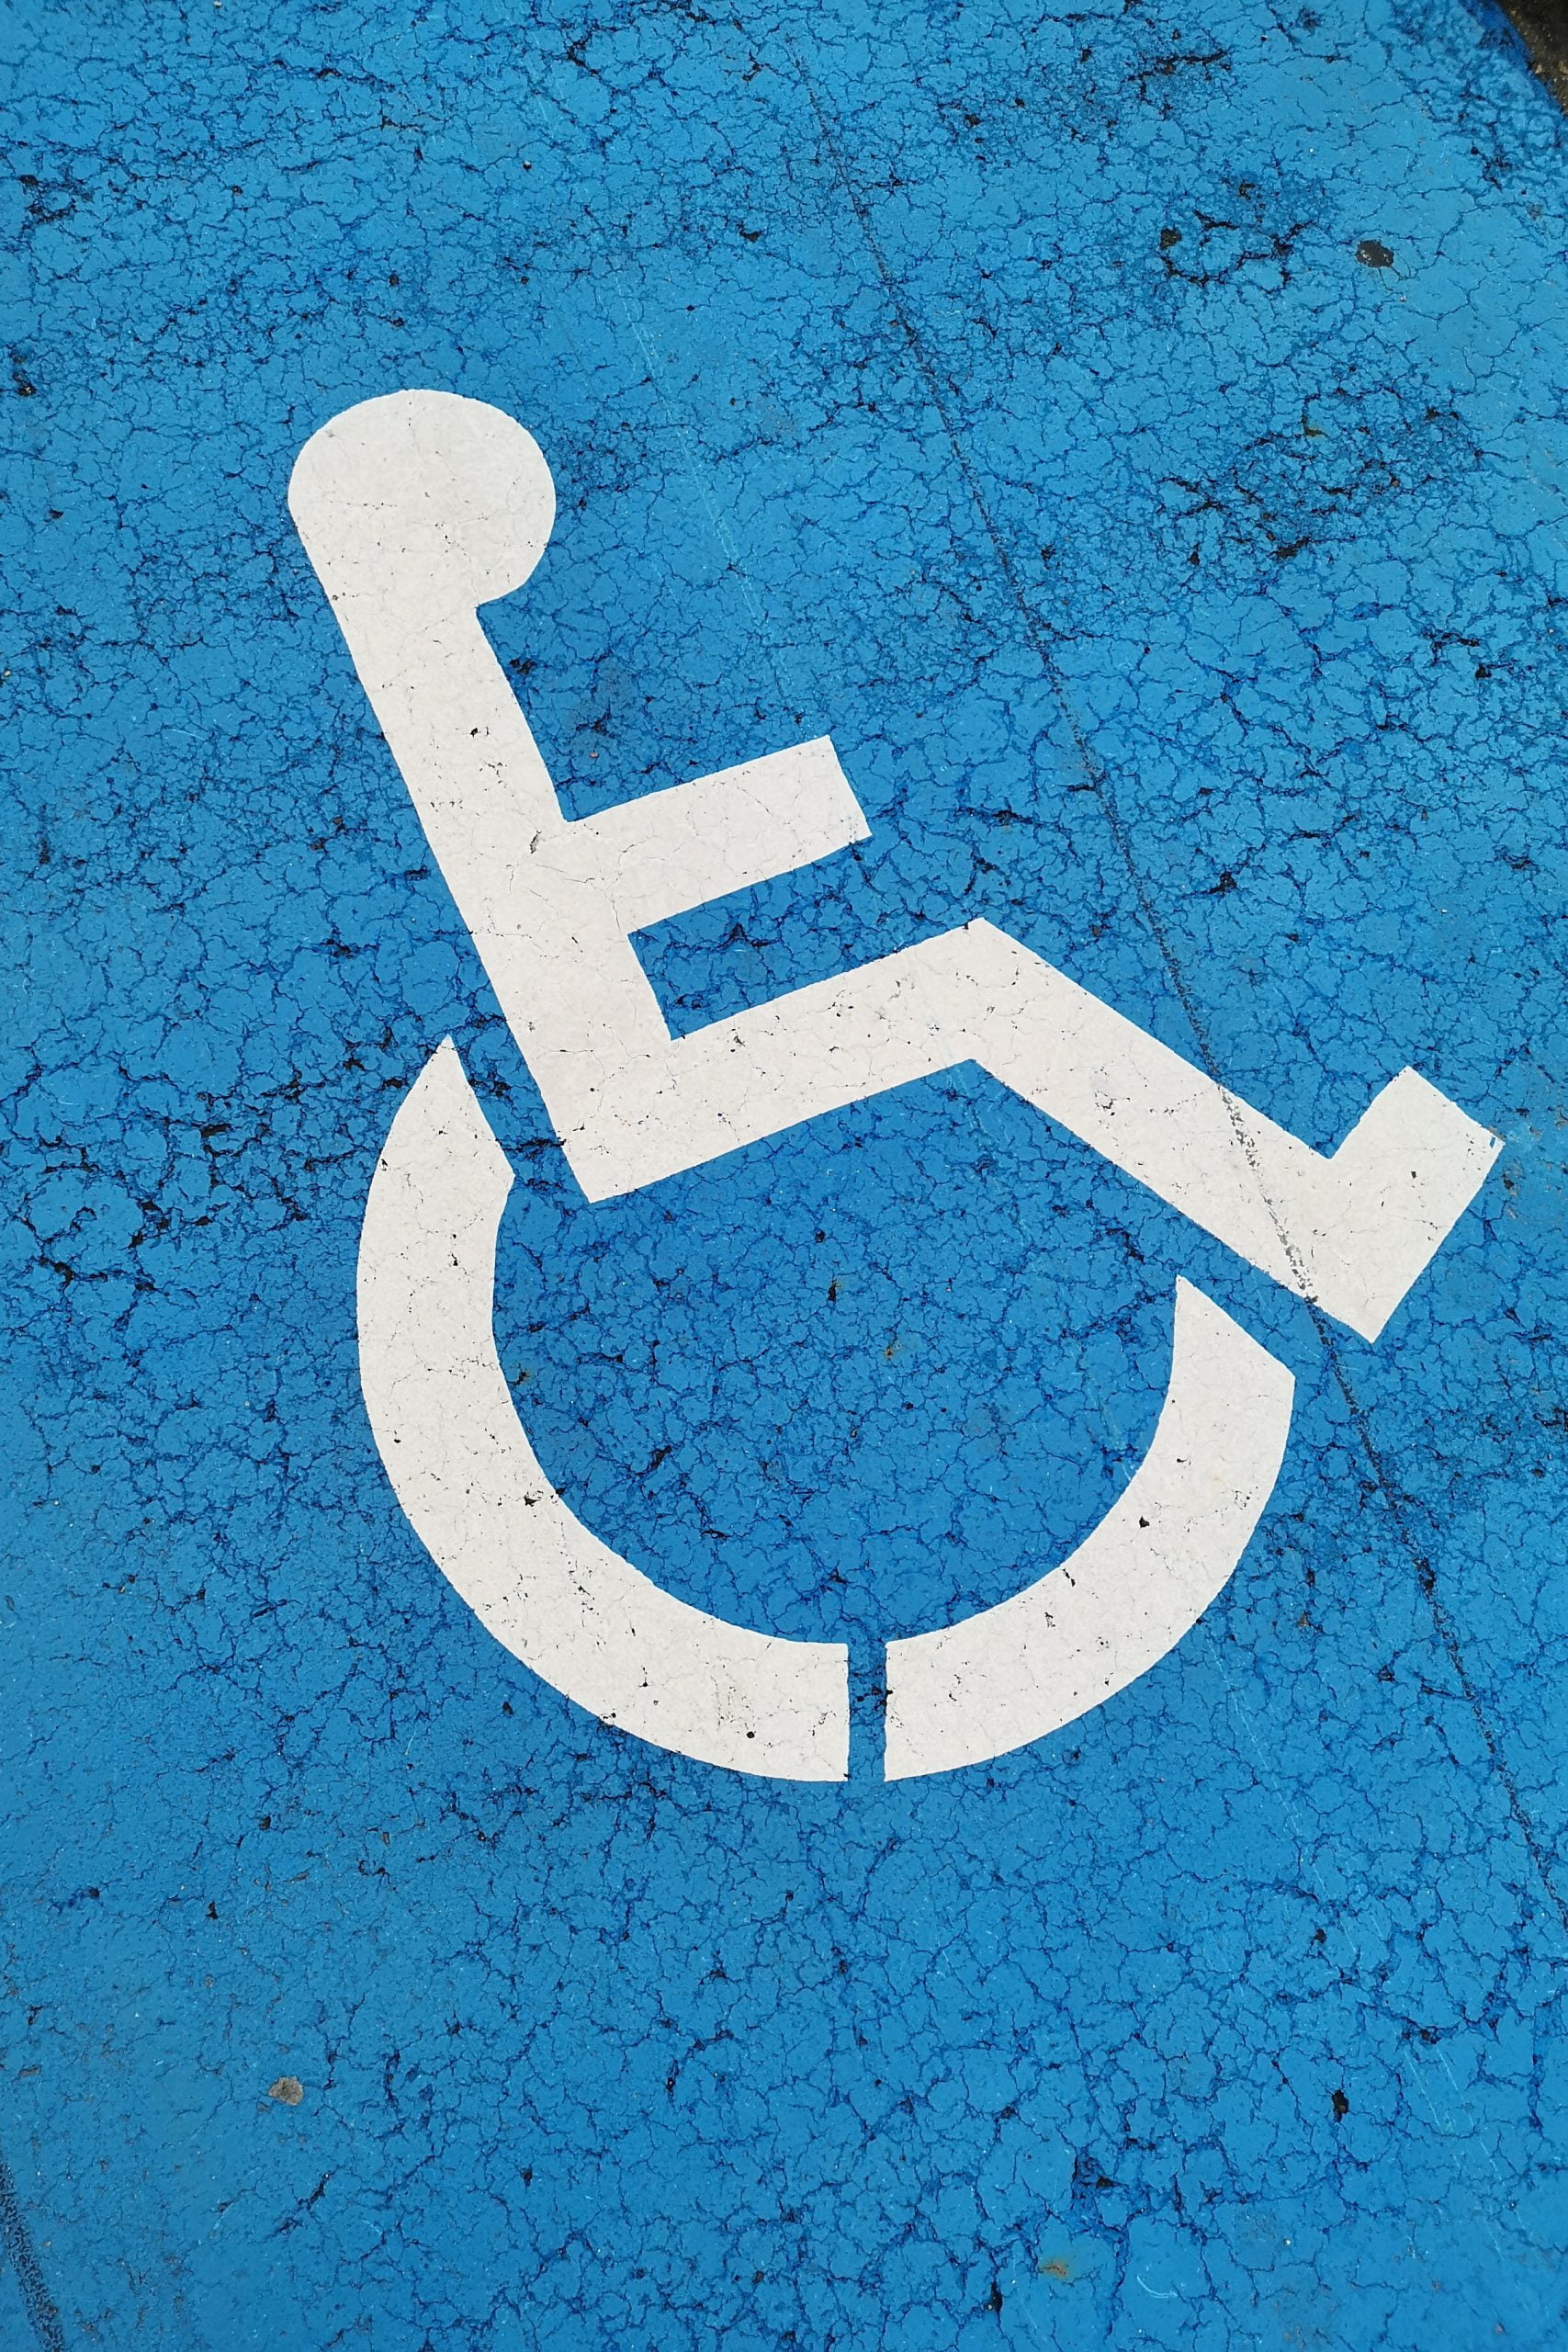 Ινδία: Ανησυχία για τον αντίκτυπο του κορωνοϊού στα άτομα με αναπηρία